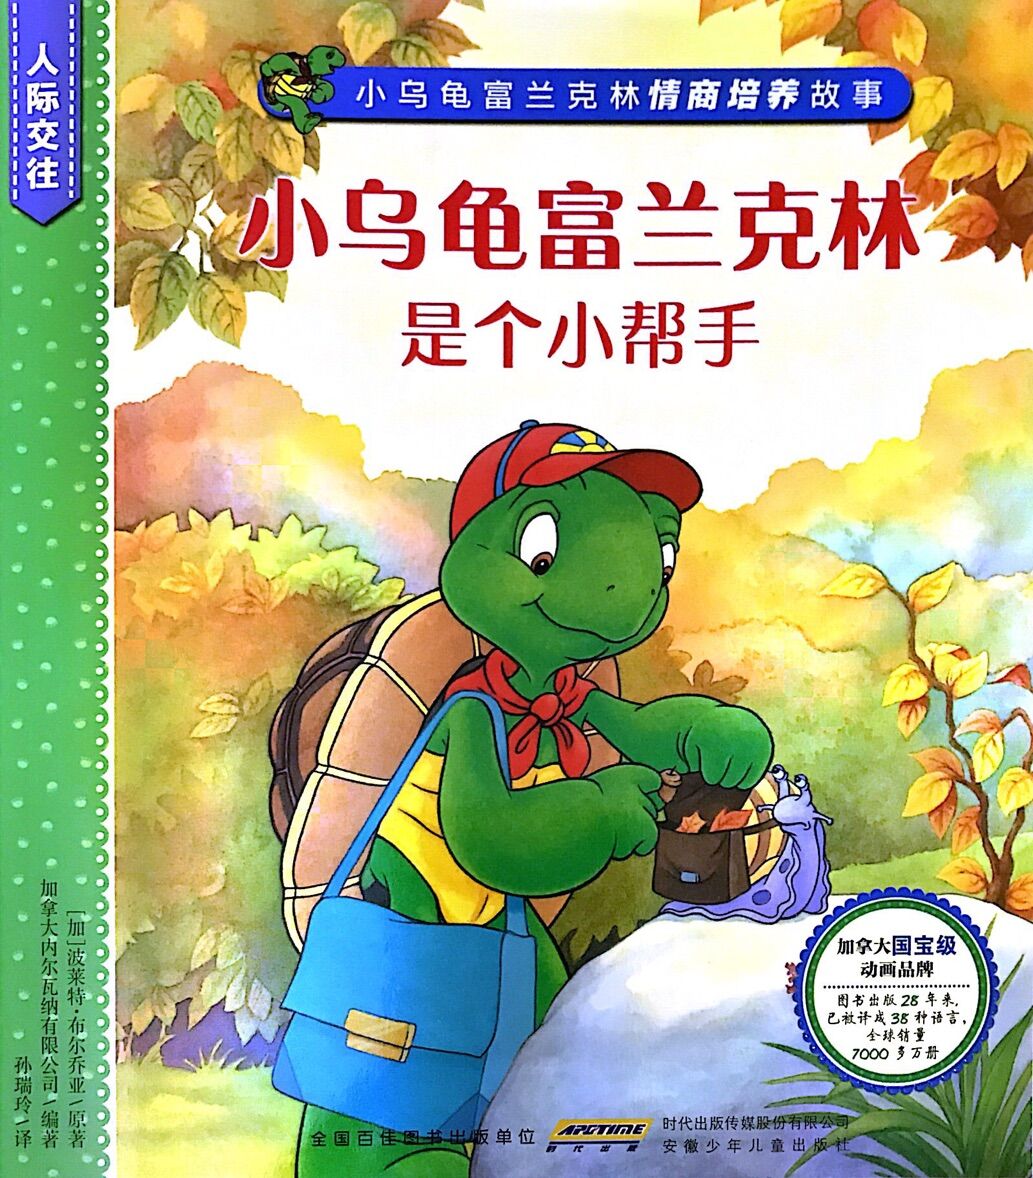 小乌龟富兰克林情商培养故事·人际交往：小乌龟富兰克林是个小帮手